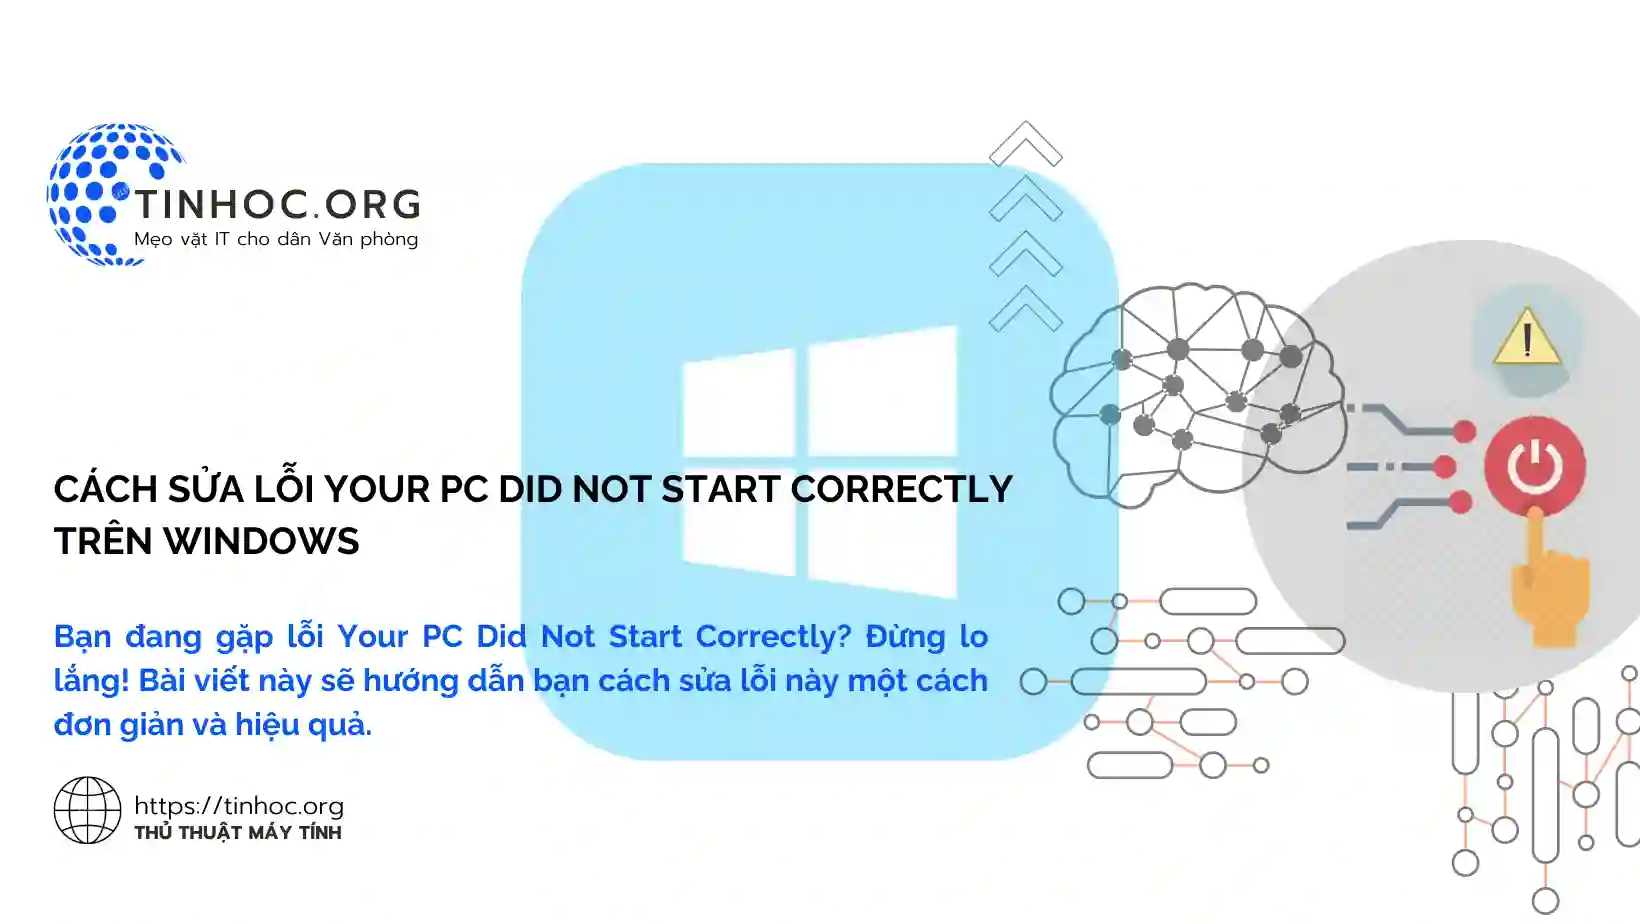 Bạn đang gặp lỗi Your PC Did Not Start Correctly? Đừng lo lắng! Bài viết này sẽ hướng dẫn bạn cách sửa lỗi này một cách đơn giản và hiệu quả.